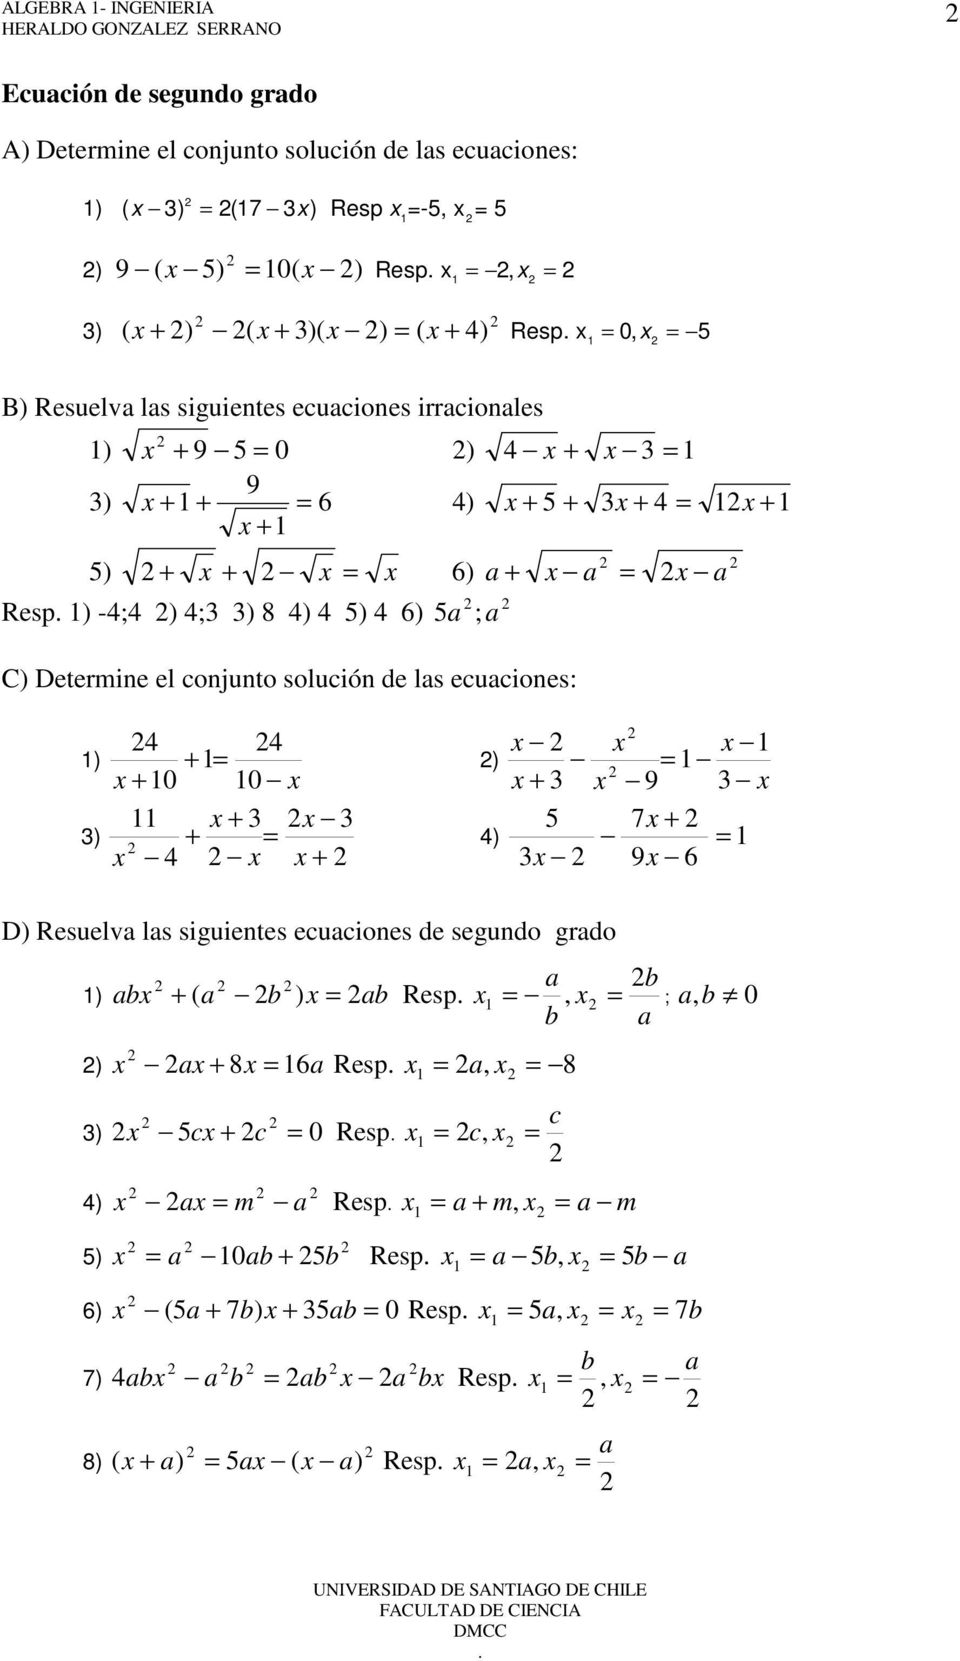 Determine el conjunto solución de ls ecuciones: ) ) + + 0 0 + + + ) + 9 7 + 9 6 ) D) Resuelv ls siguientes ecuciones de segundo grdo ) b ( b ) b